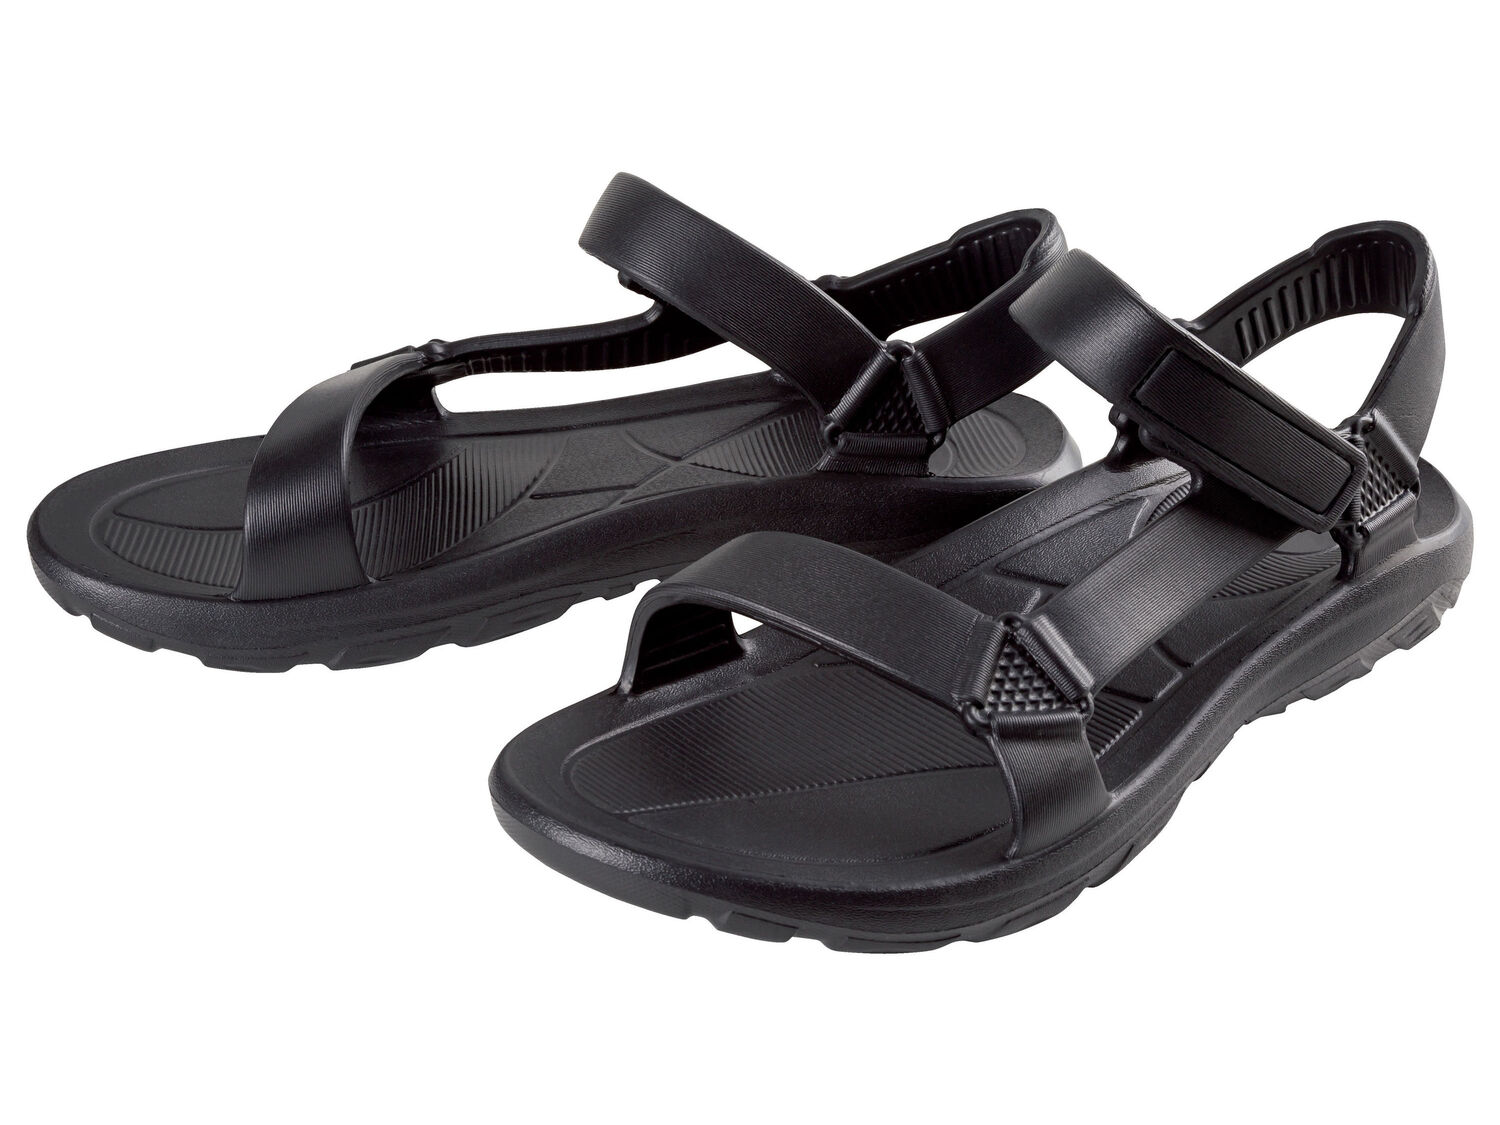 Ciabatte o sandali da donna Esmara, prezzo 4.99 € 
Misure: 36-40
Taglie disponibili

Caratteristiche ...